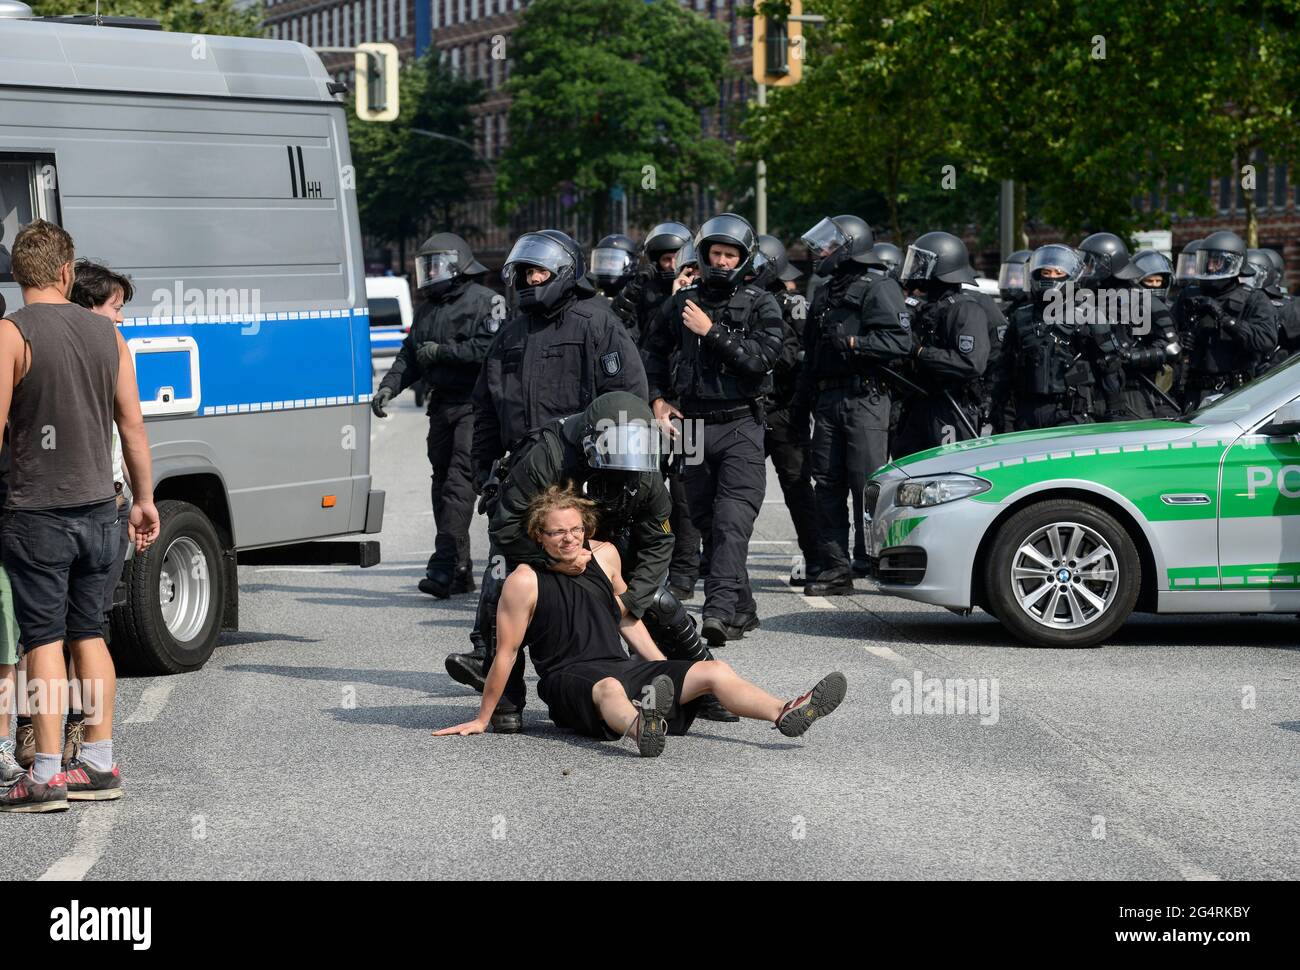 DEUTSCHLAND, Hamburg, Proteste gegen den den den G20 Gipfel, Millerntor, Polizei raeumt Sitzblockaden in der Ost West Strasse Foto Stock